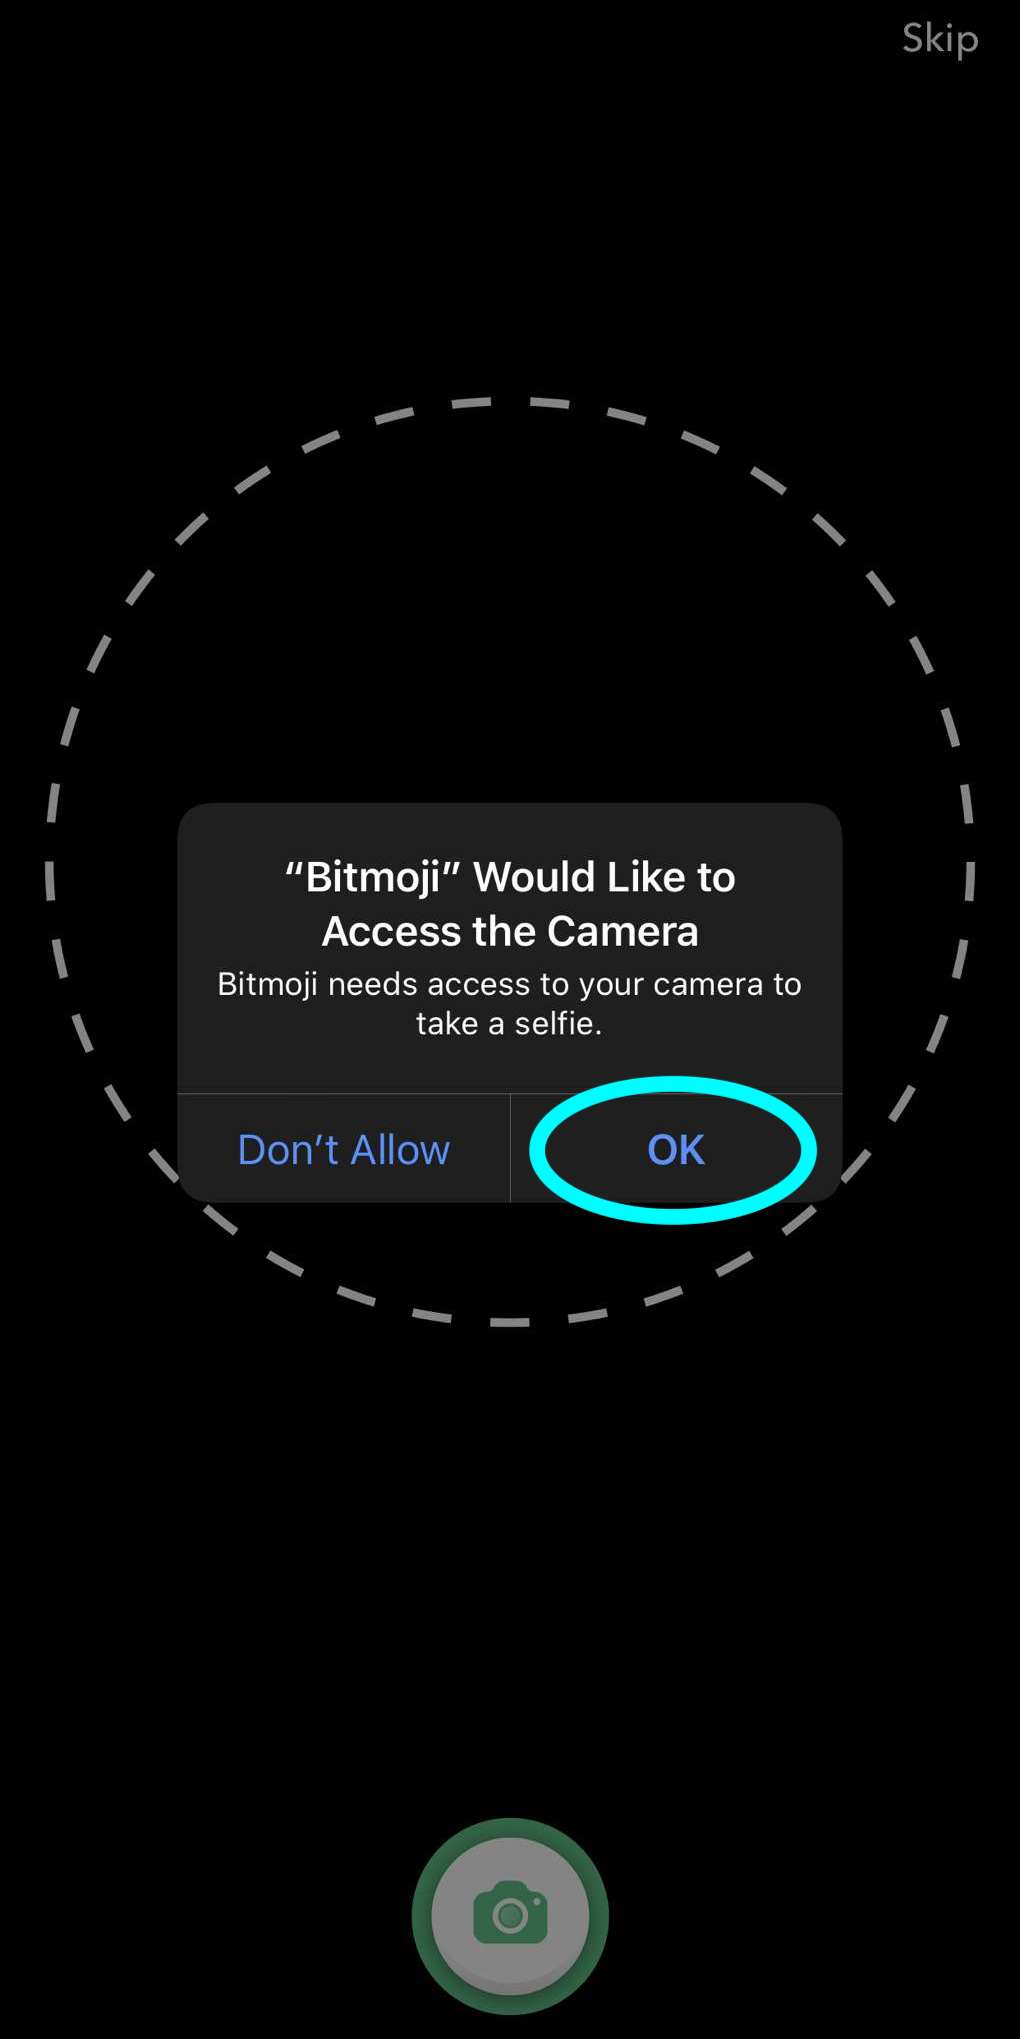 Ventana emergente que solicita el acceso de Bitmoji a la cámara, el botón "Permitir el acceso" aparece destacado